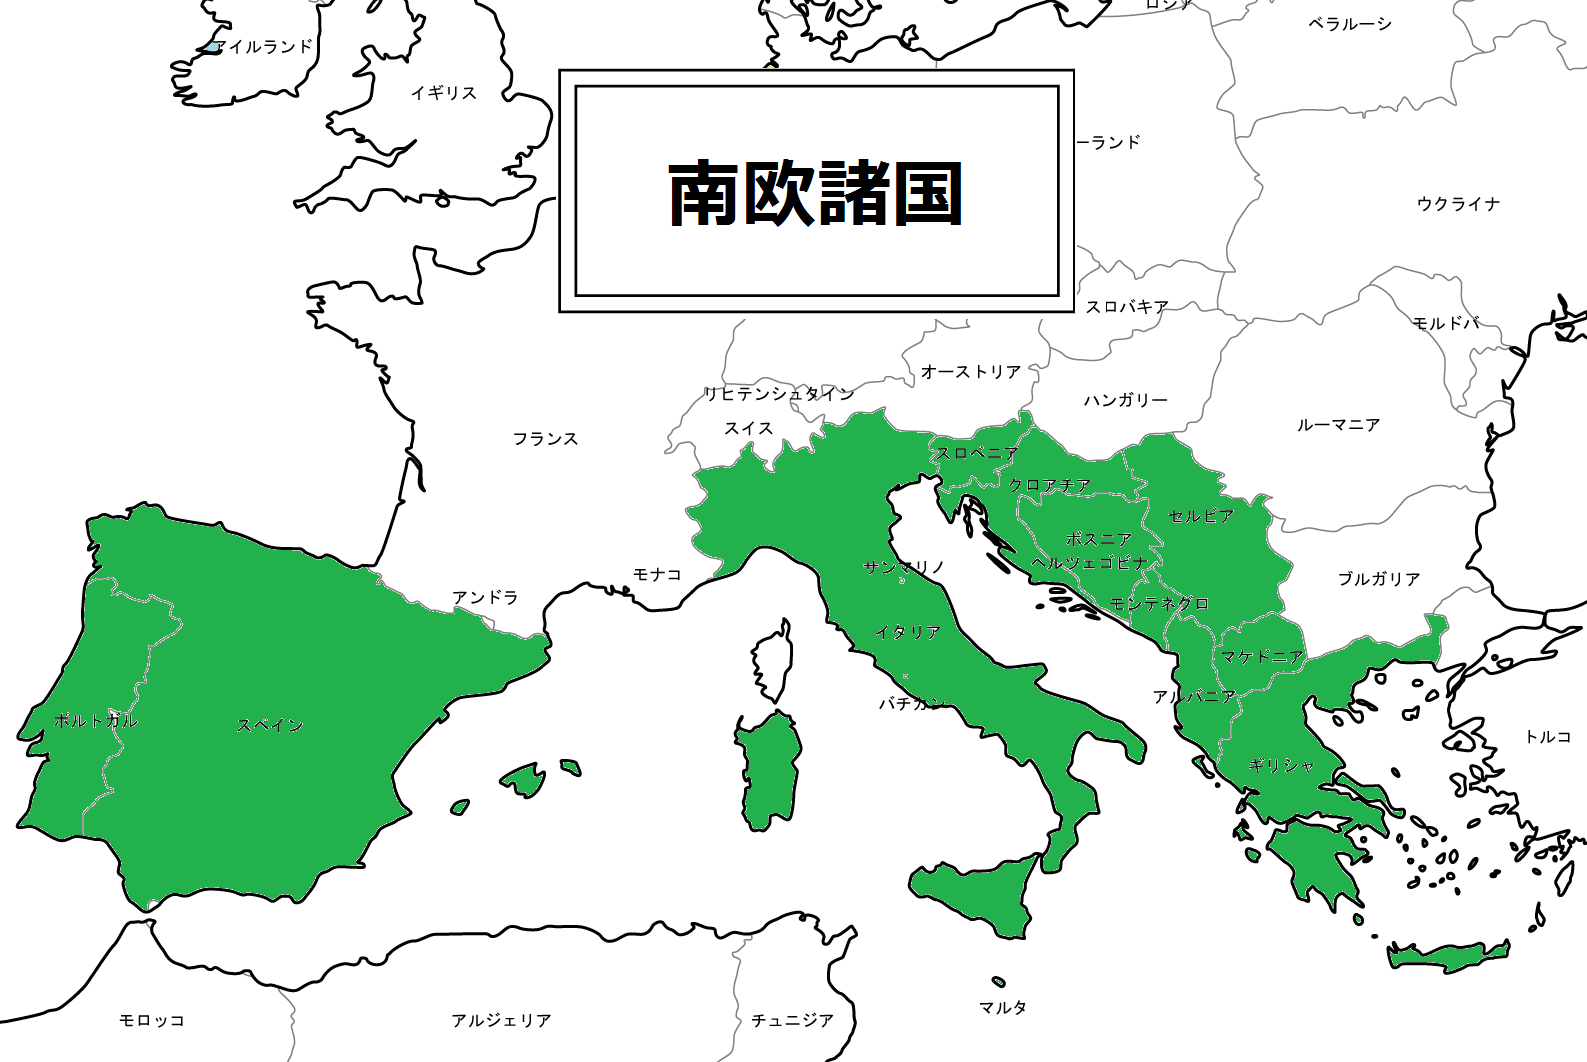 南ヨーロッパ 南欧 とはどこか 南欧諸国一覧 民族 言語ほか